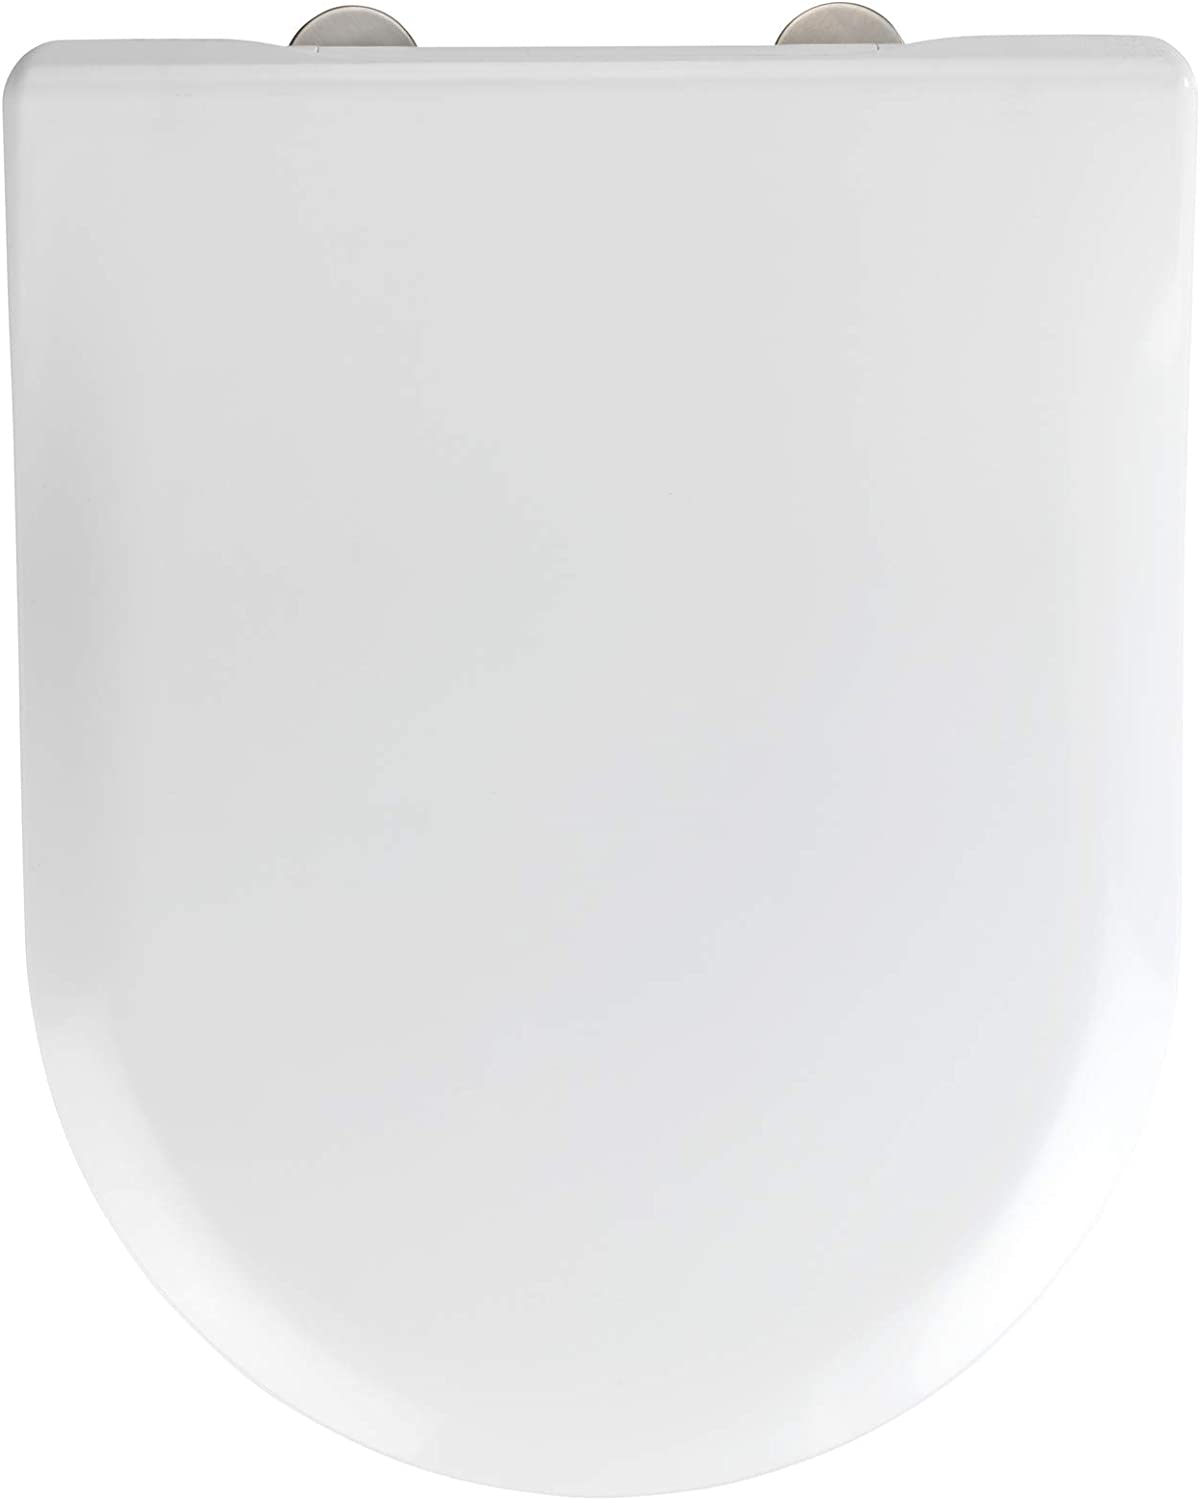 WC-Sitz Exclusive Nr. 5, Toilettensitz mit Absenkautomatik, passend für Villeroy & Boch Subway 2.0 Slim und handelsübliche Keramiken, WC-Deckel aus antibakteriellem Duroplast, 37 x 46 cm, Weiß